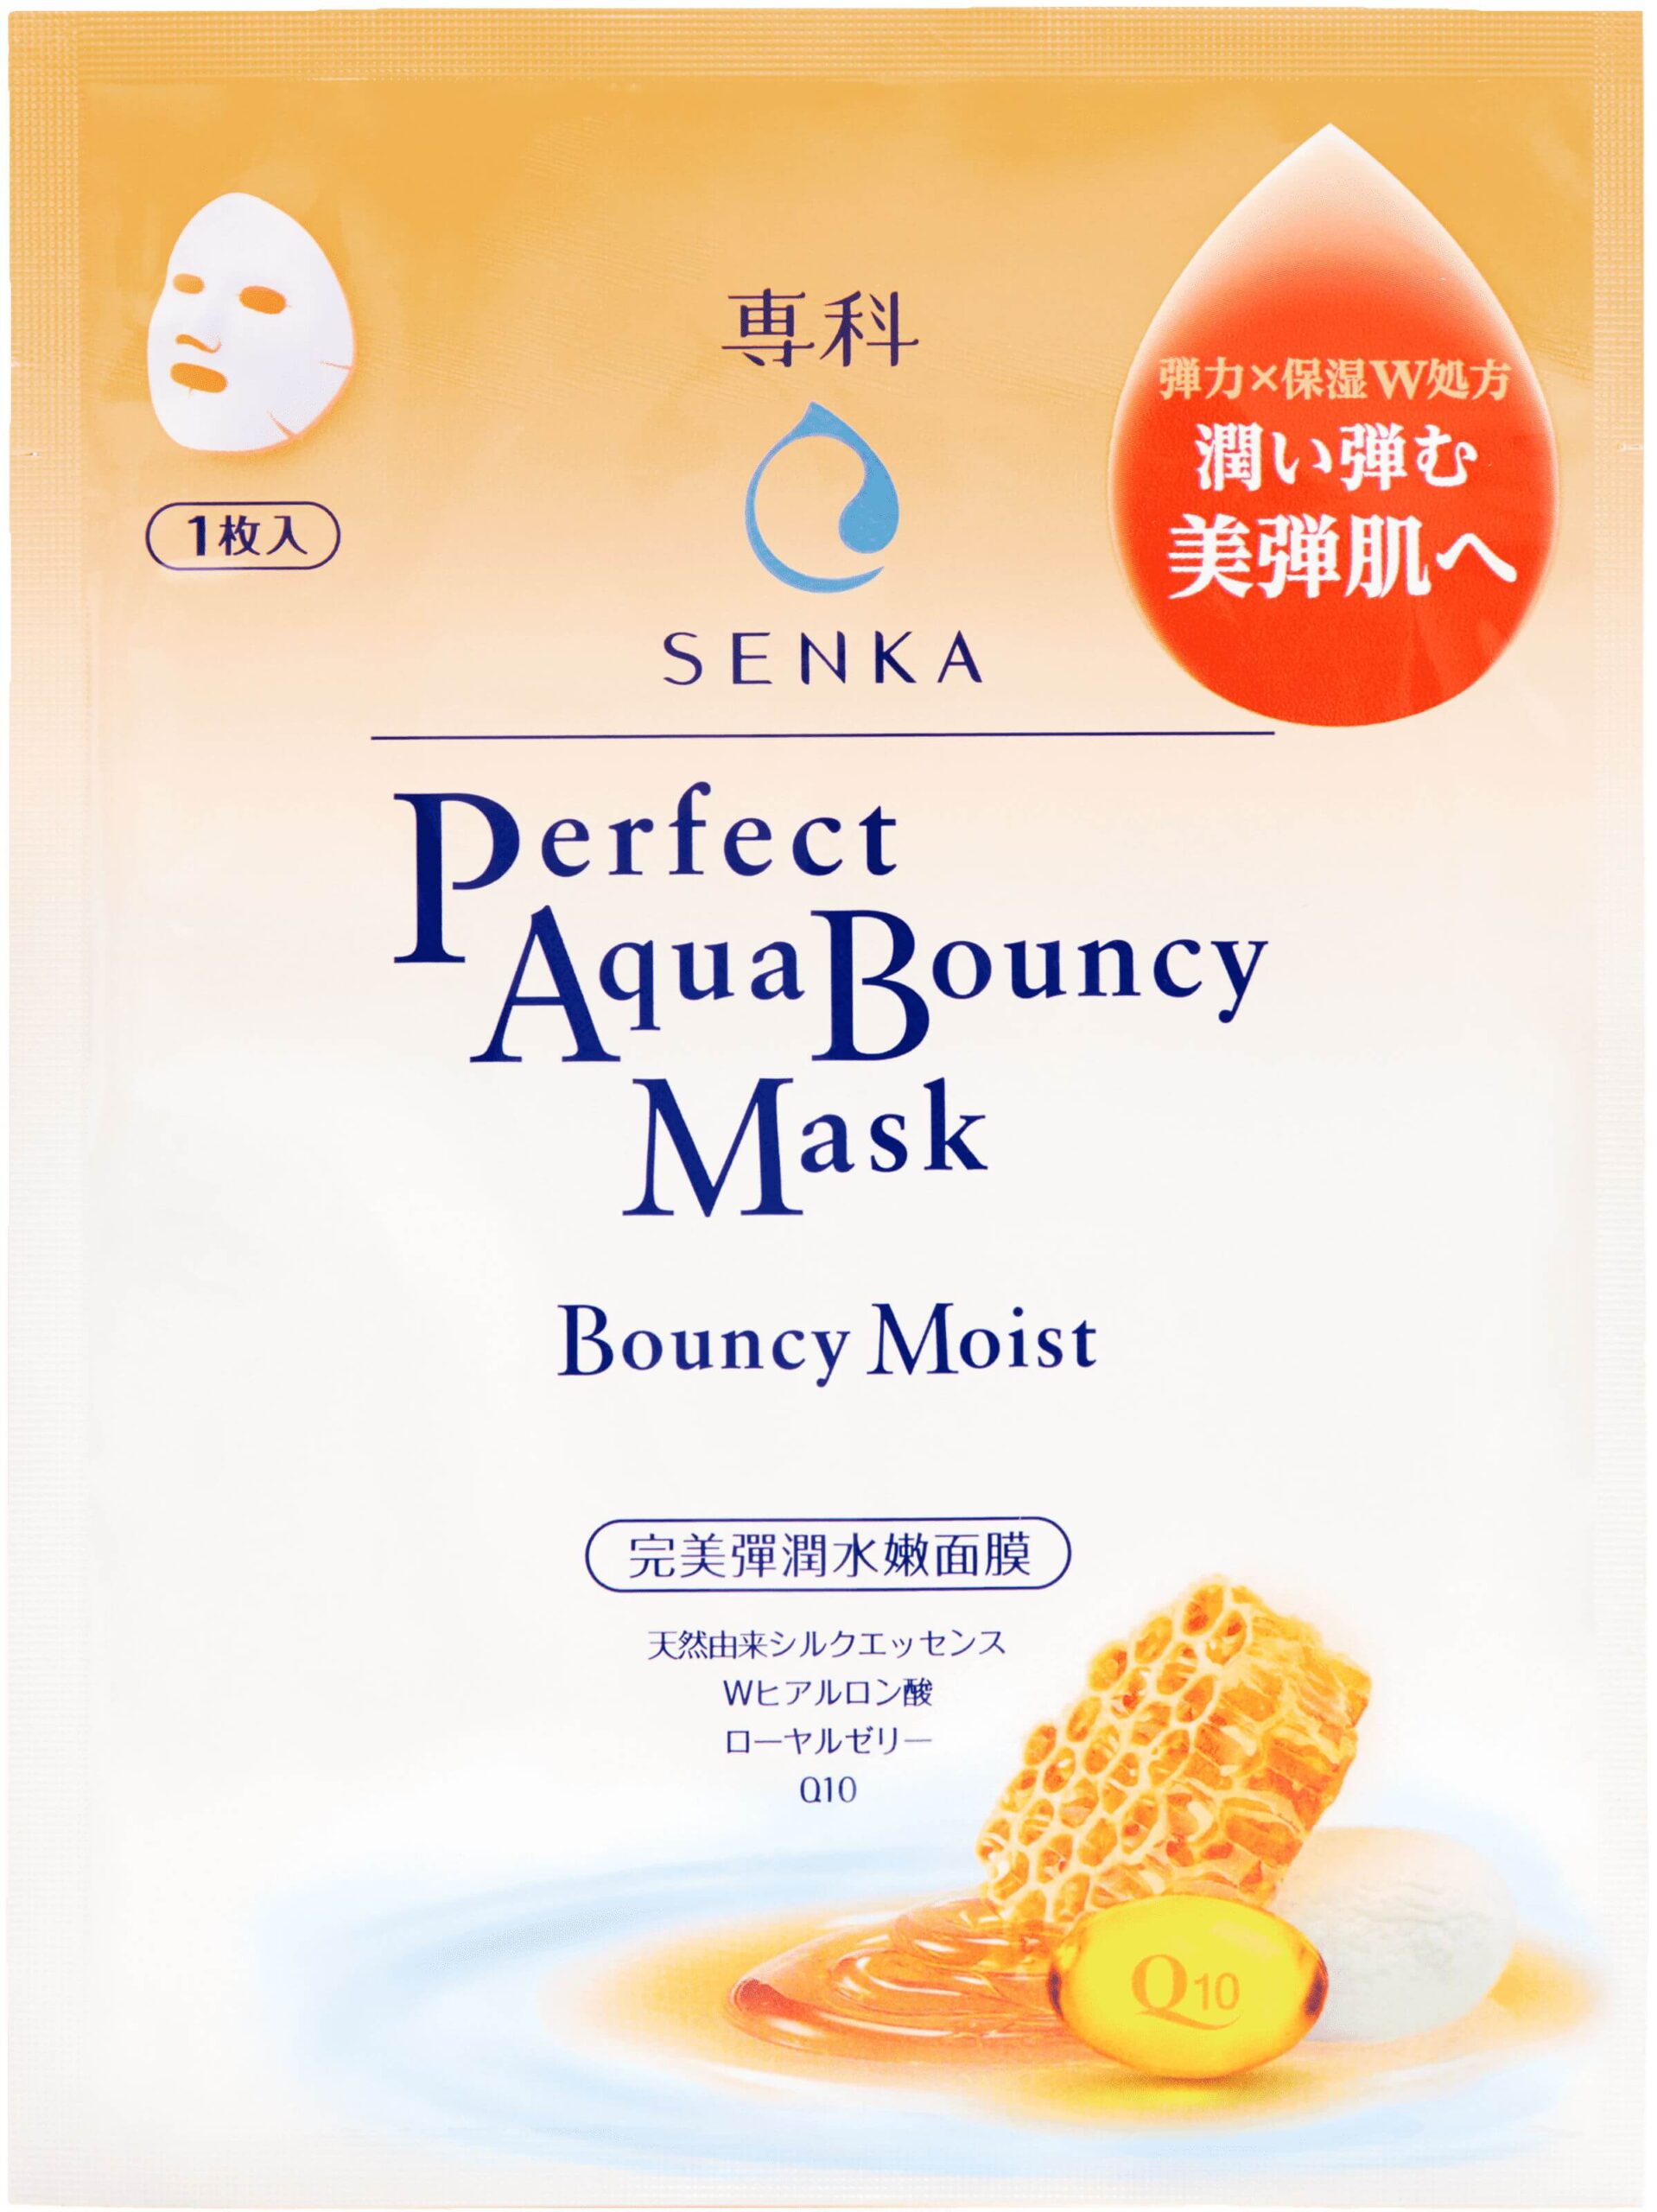 Senka Perfect Aqua Bouncy Mask – Bouncy Moist